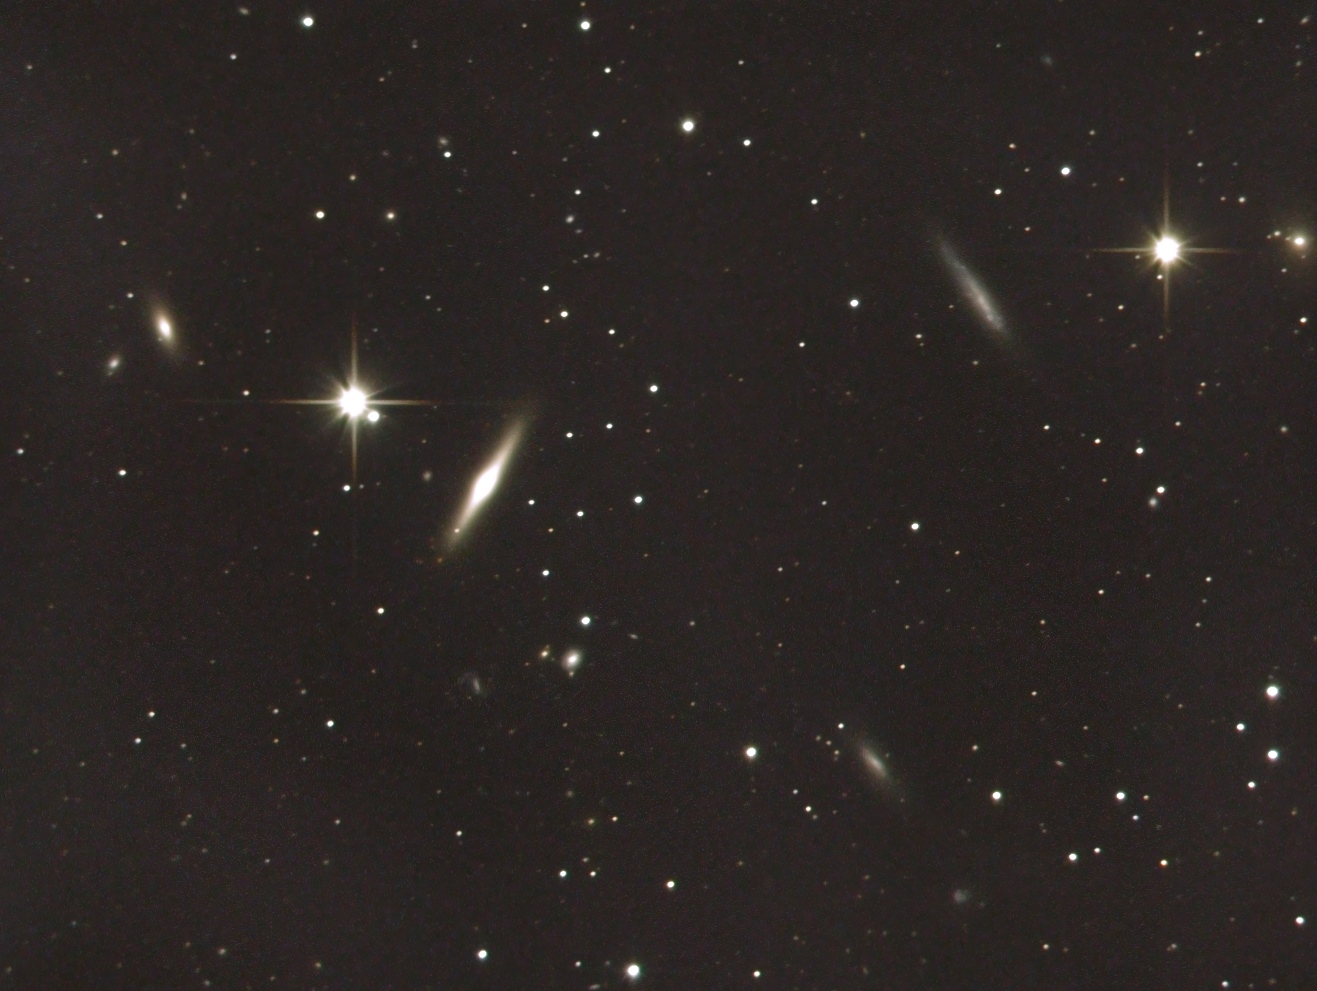 NGC 4111